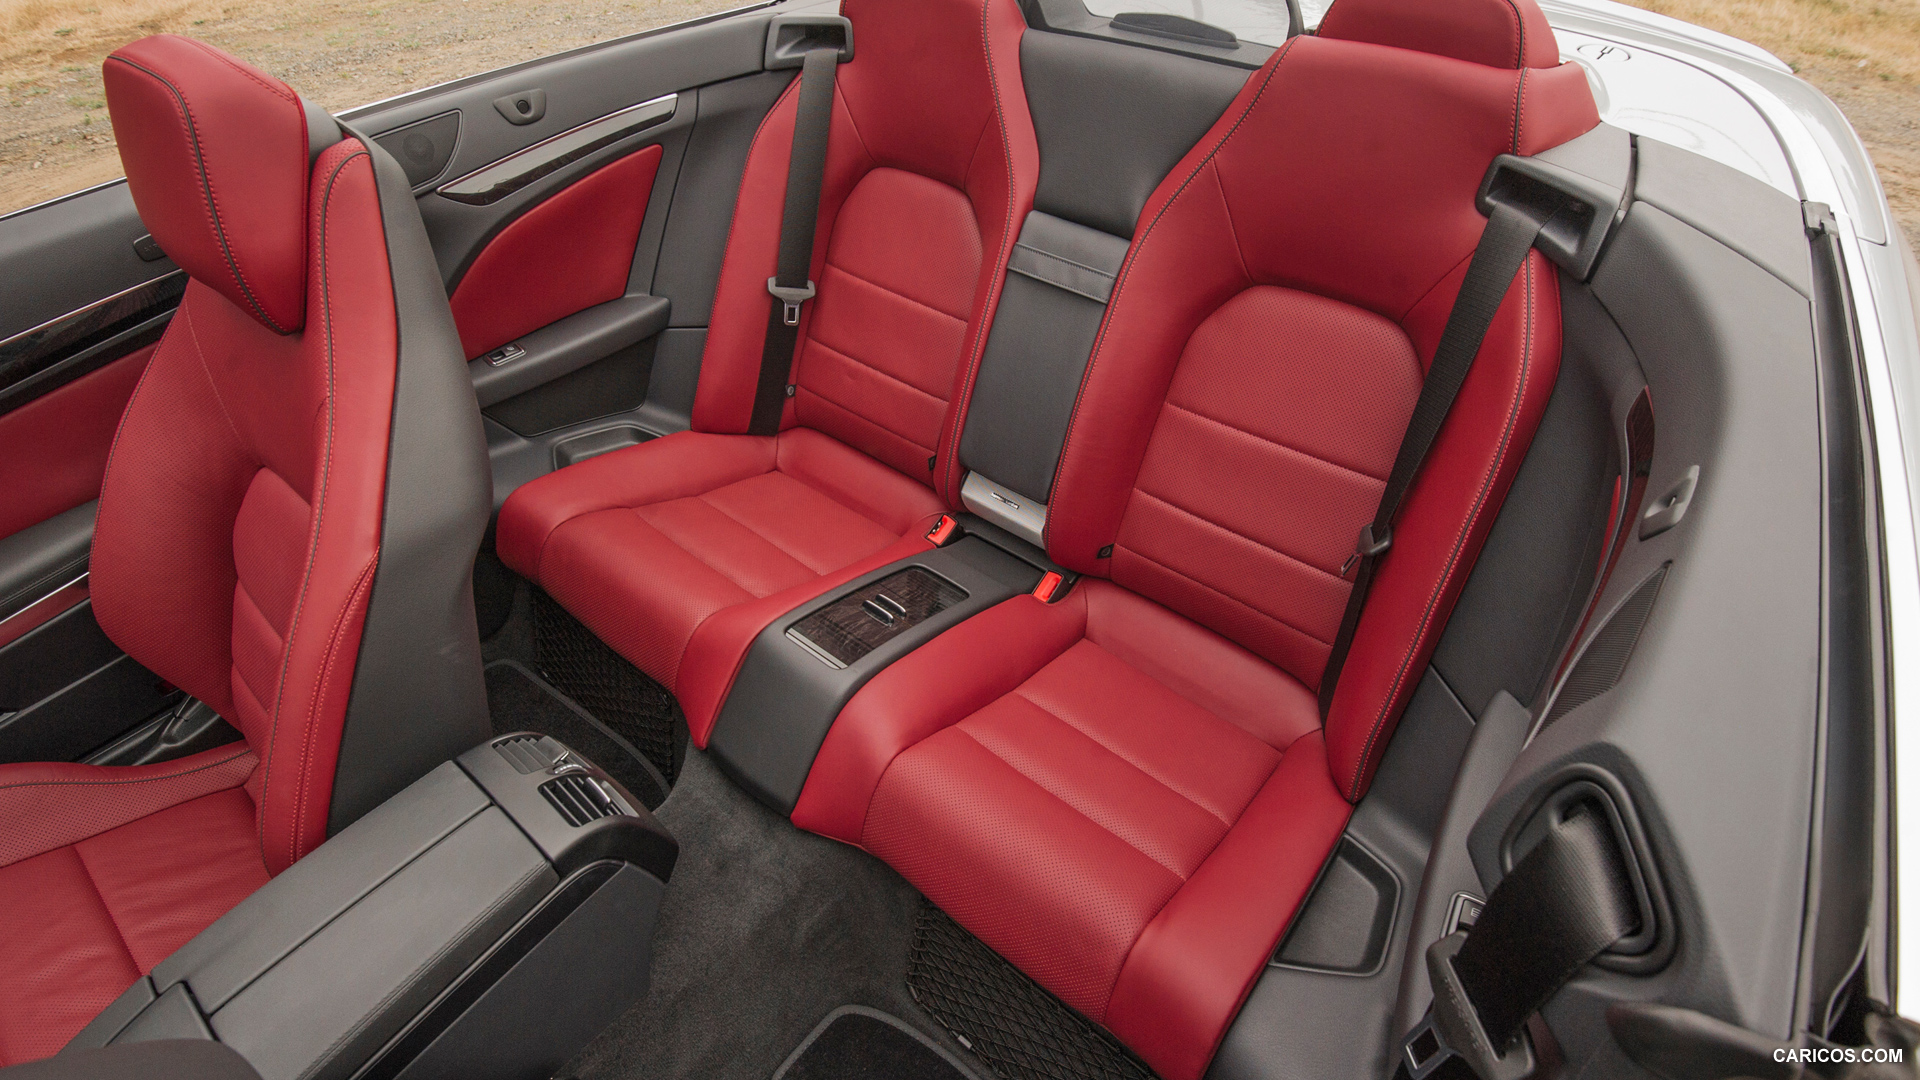 2014 Mercedes-Benz E-Class - E550 Cabriolet  - Interior Rear Seats, #80 of 82